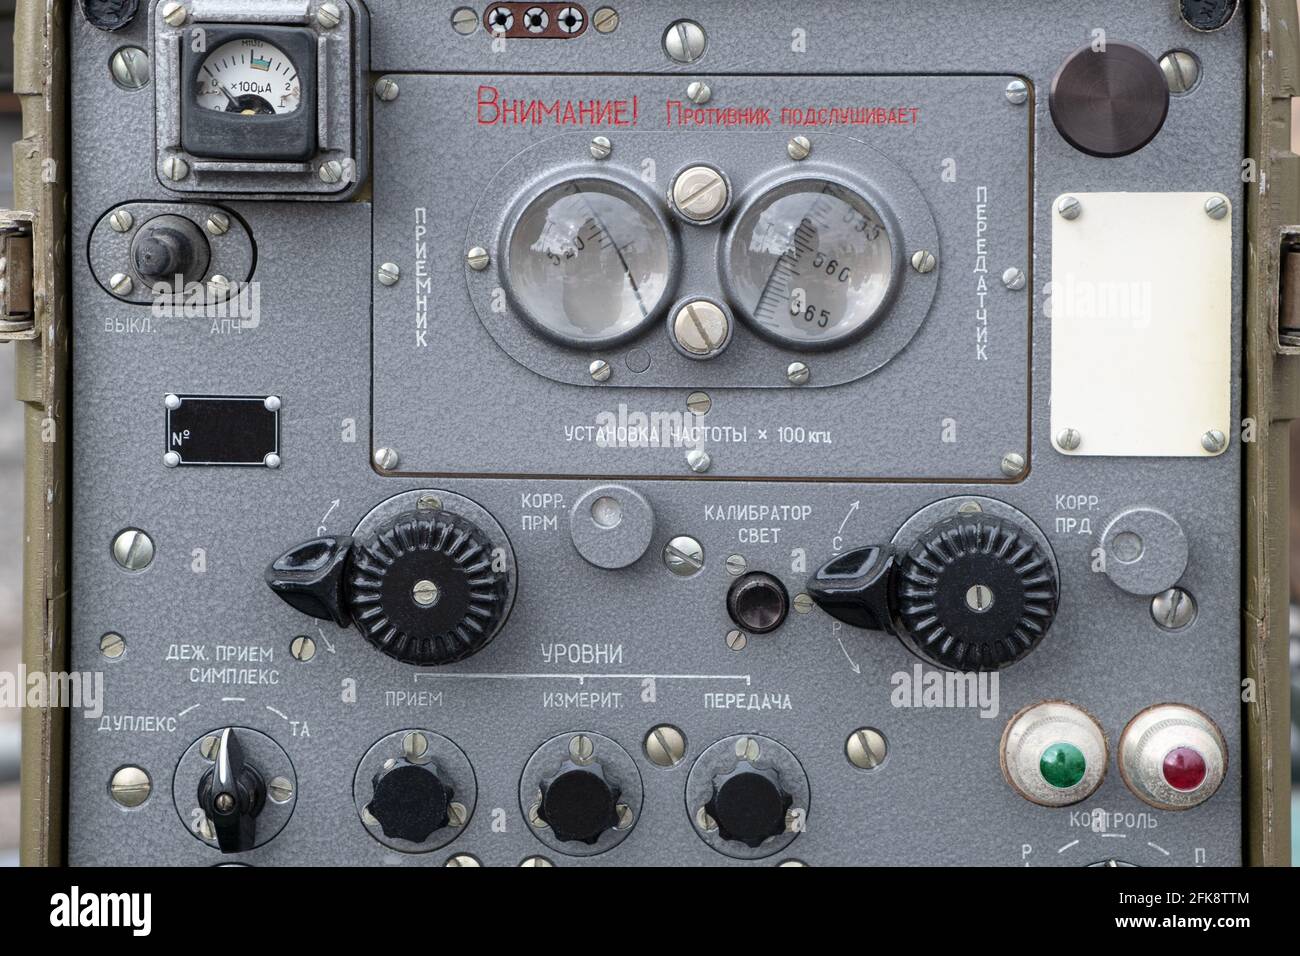 Ein Portable Retro Vintage alten Militär Sowjetunion Funksignal Radar Tracking-Gerät. Suche nach illegalen Radiosendern und Funkverfolgungsbeacons Stockfoto